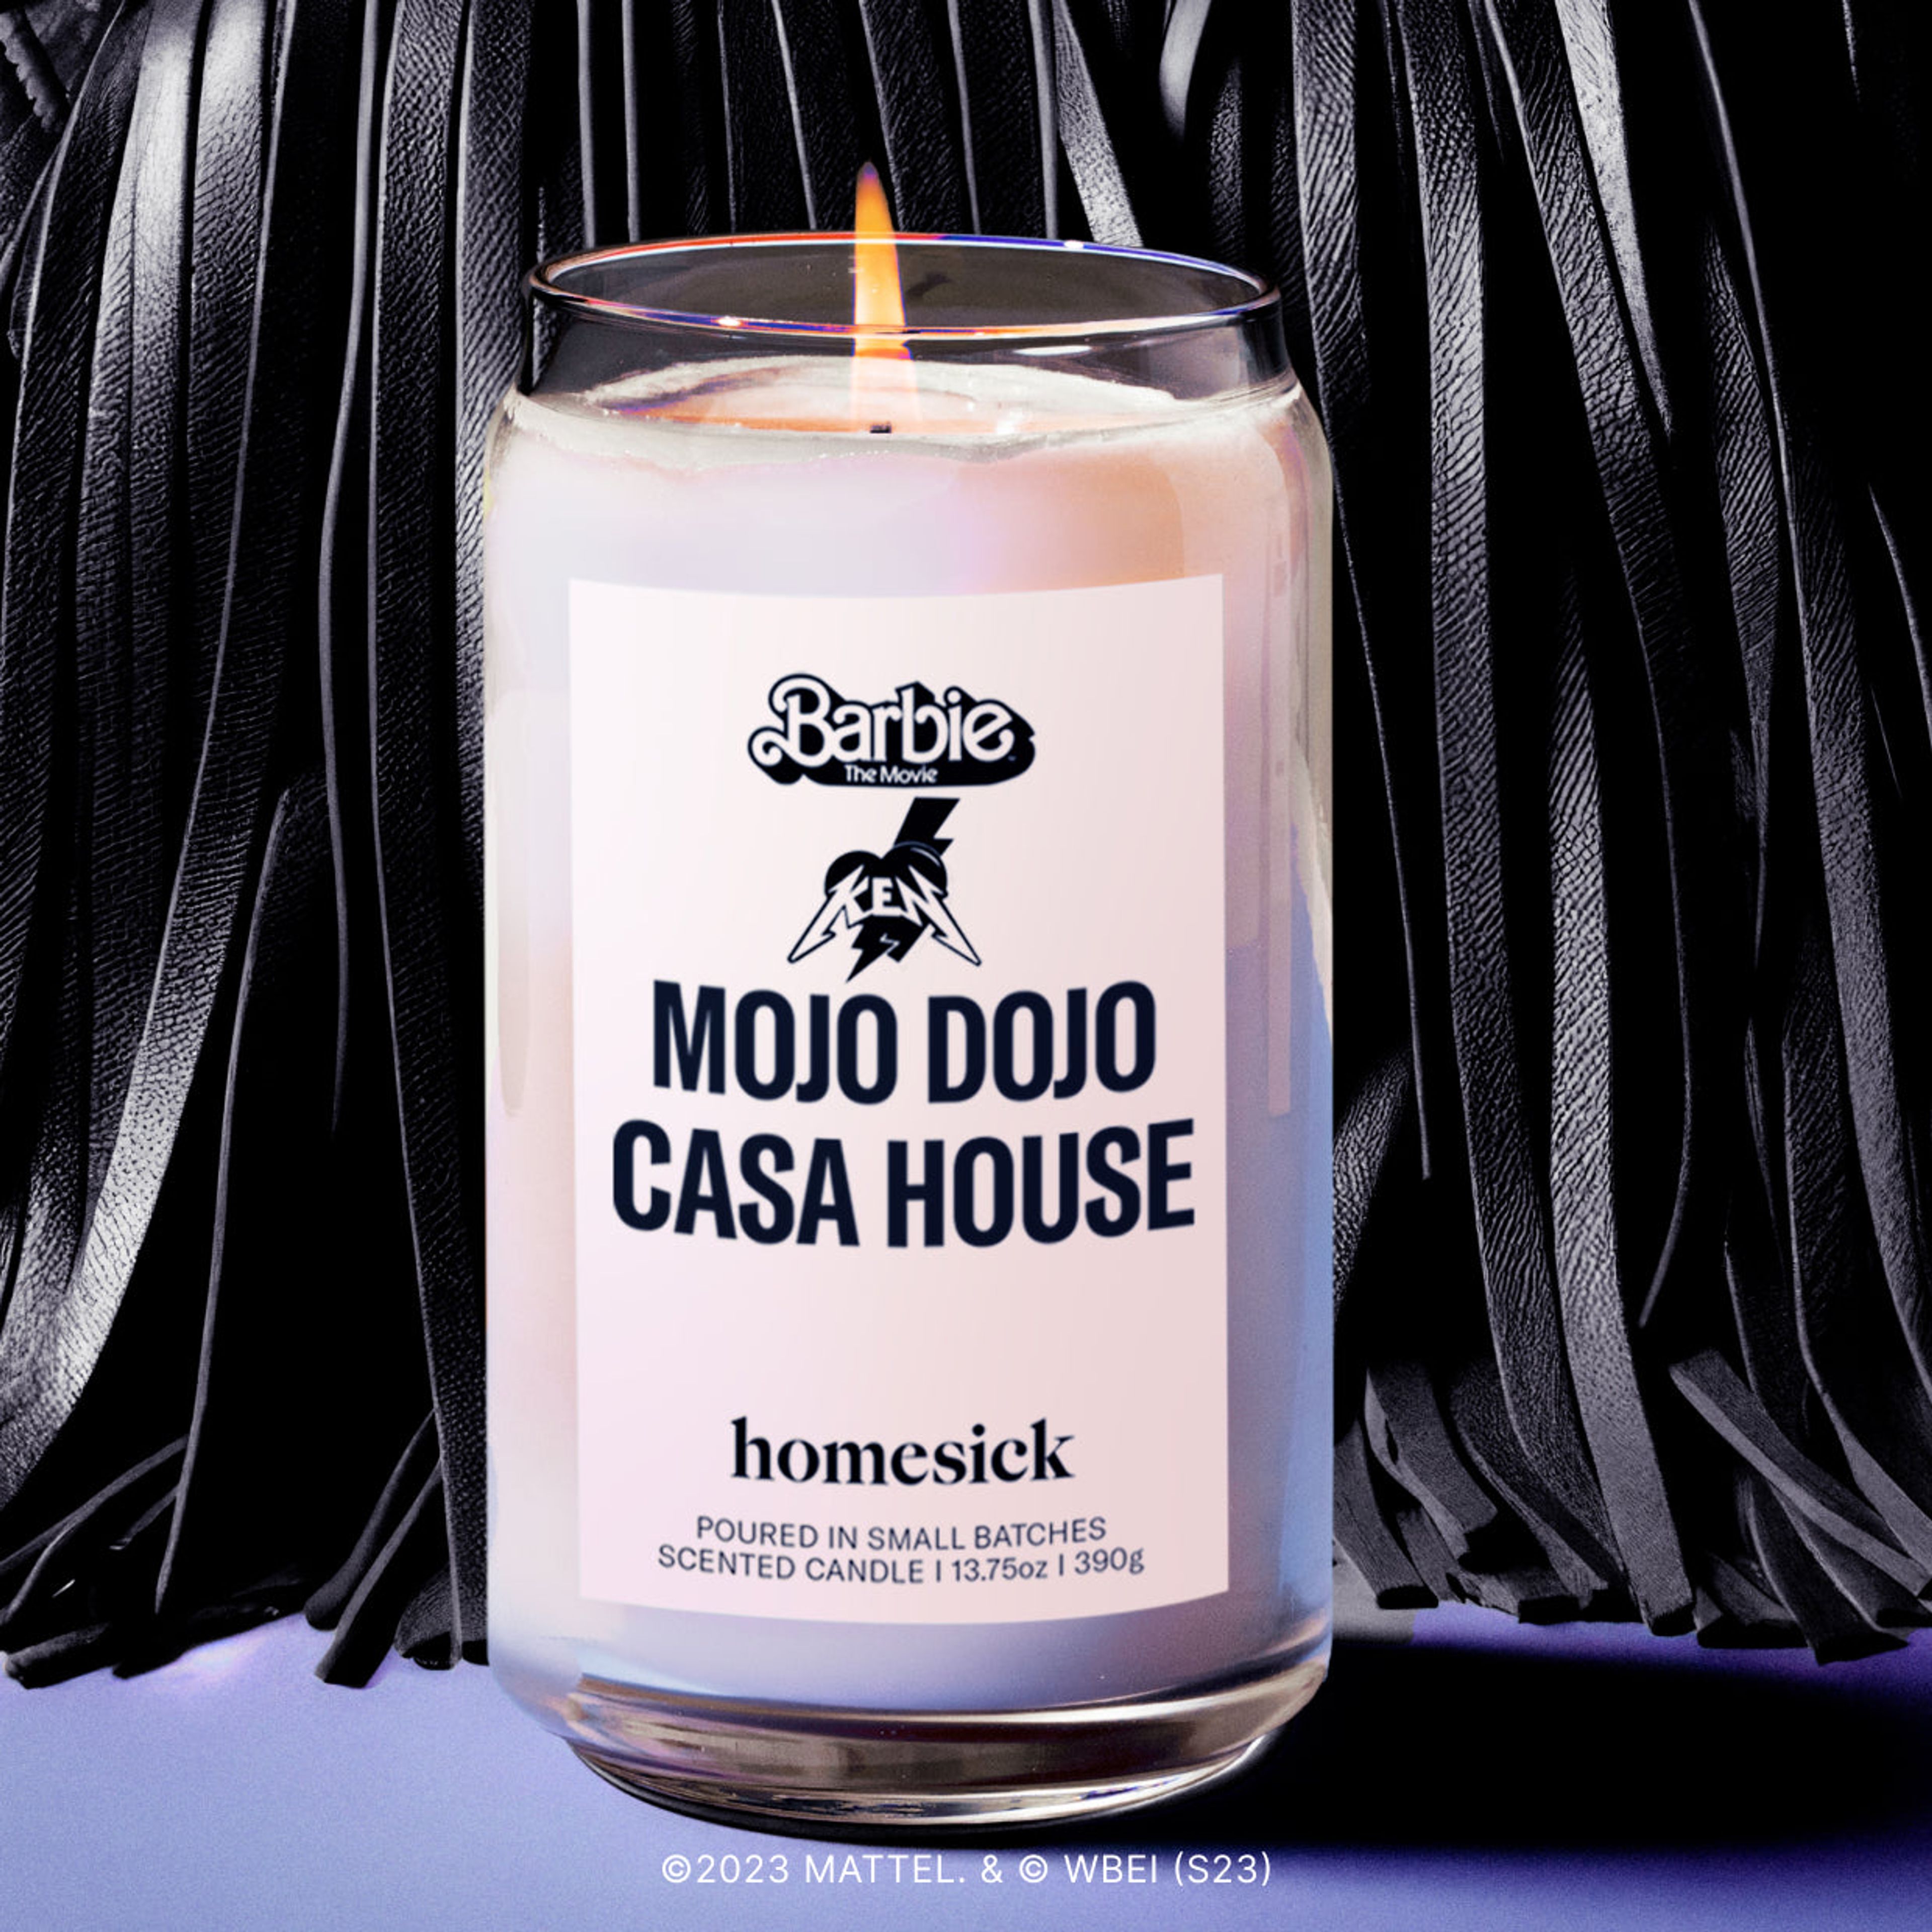 Ken Mojo Dojo Casa House Candle